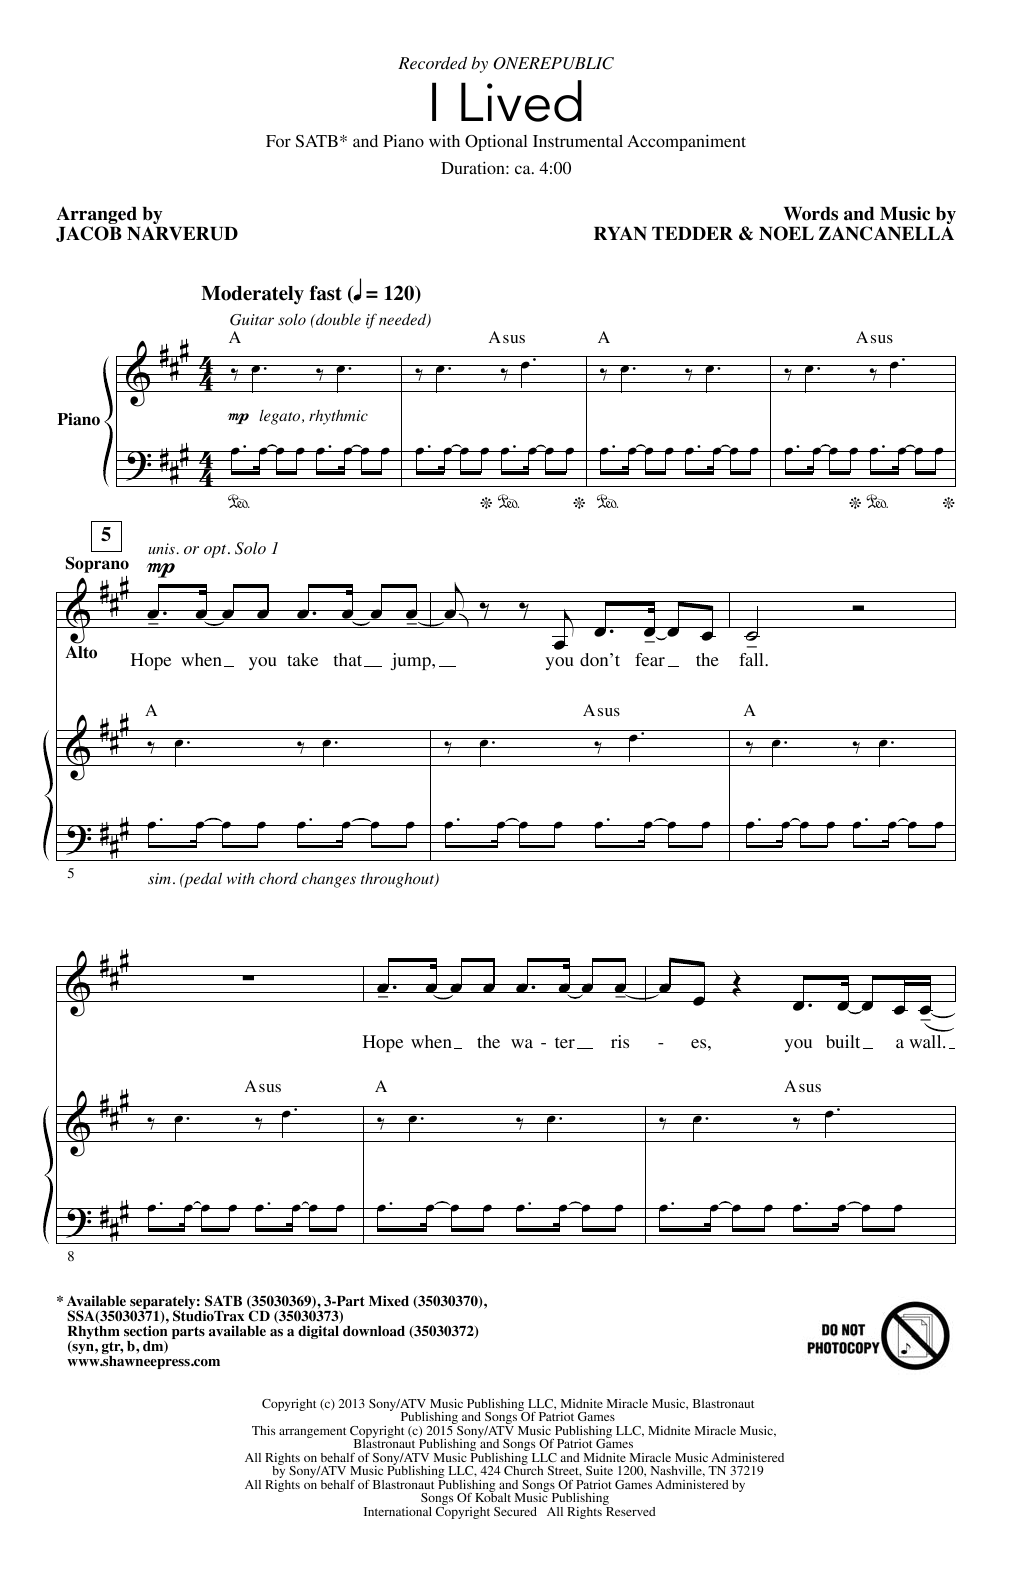 OneRepublic I Lived (arr. Jacob Narverud) Sheet Music Notes & Chords for SAB - Download or Print PDF